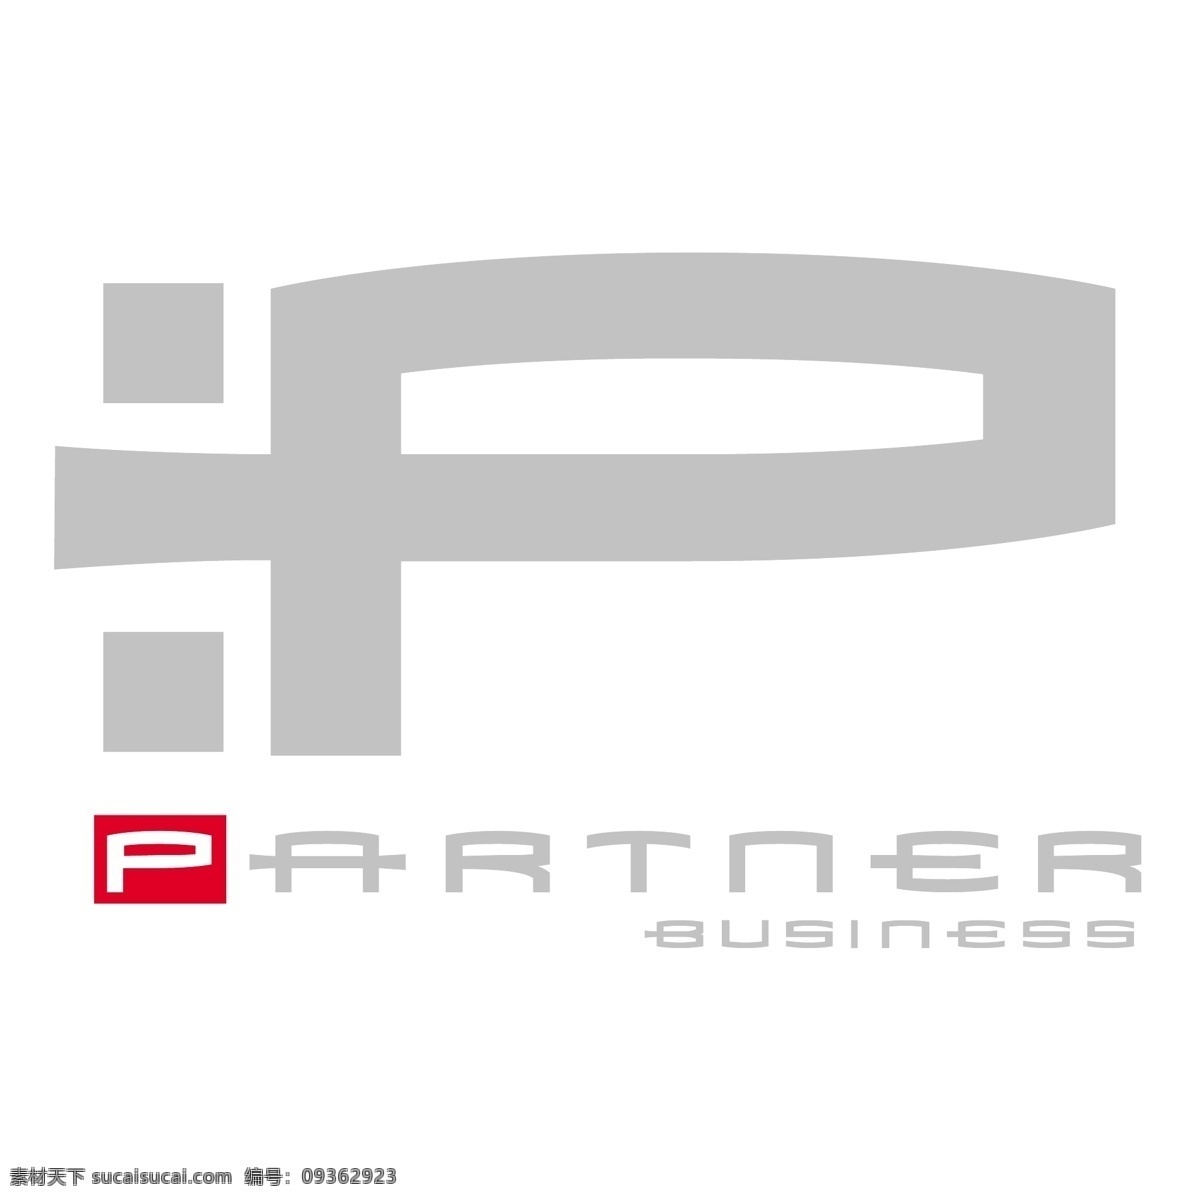 业务 合作伙伴 免费 标识 psd源文件 logo设计